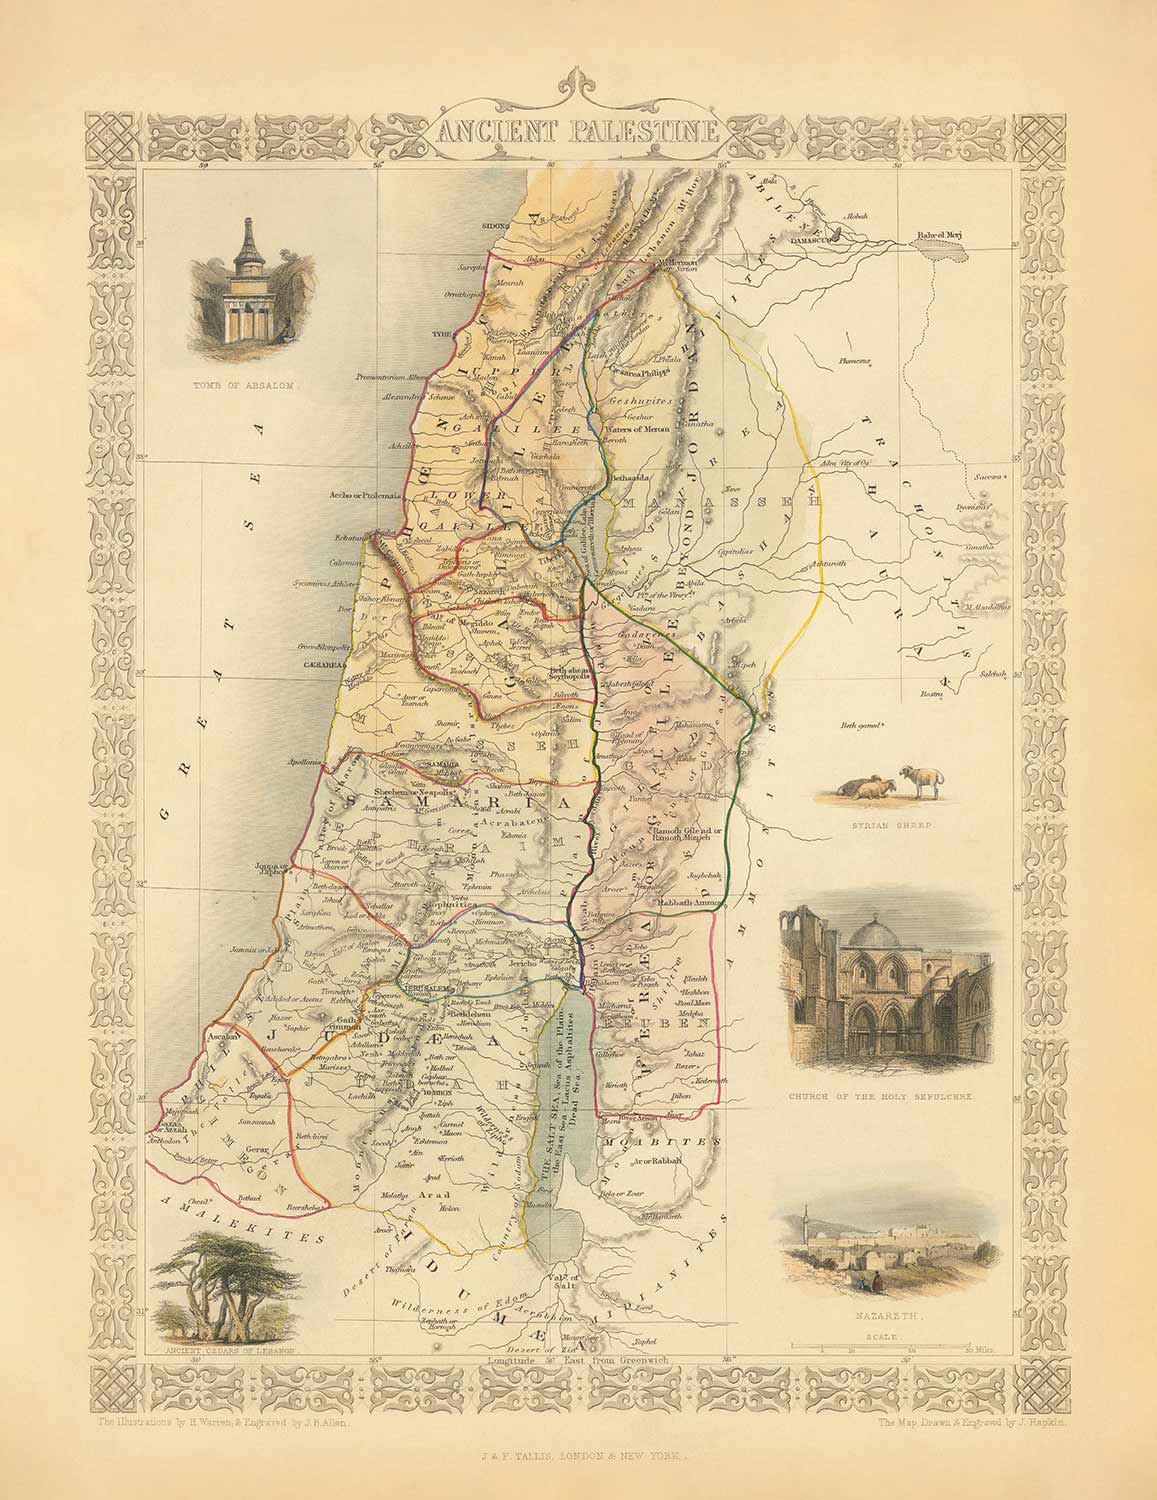 Mapa antiguo de la antigua Palestina en 1851 - Tierra Santa, Canaán, Jerusalén, Judea, Samaria, Galilea, Israel, Cisjordania, Gaza